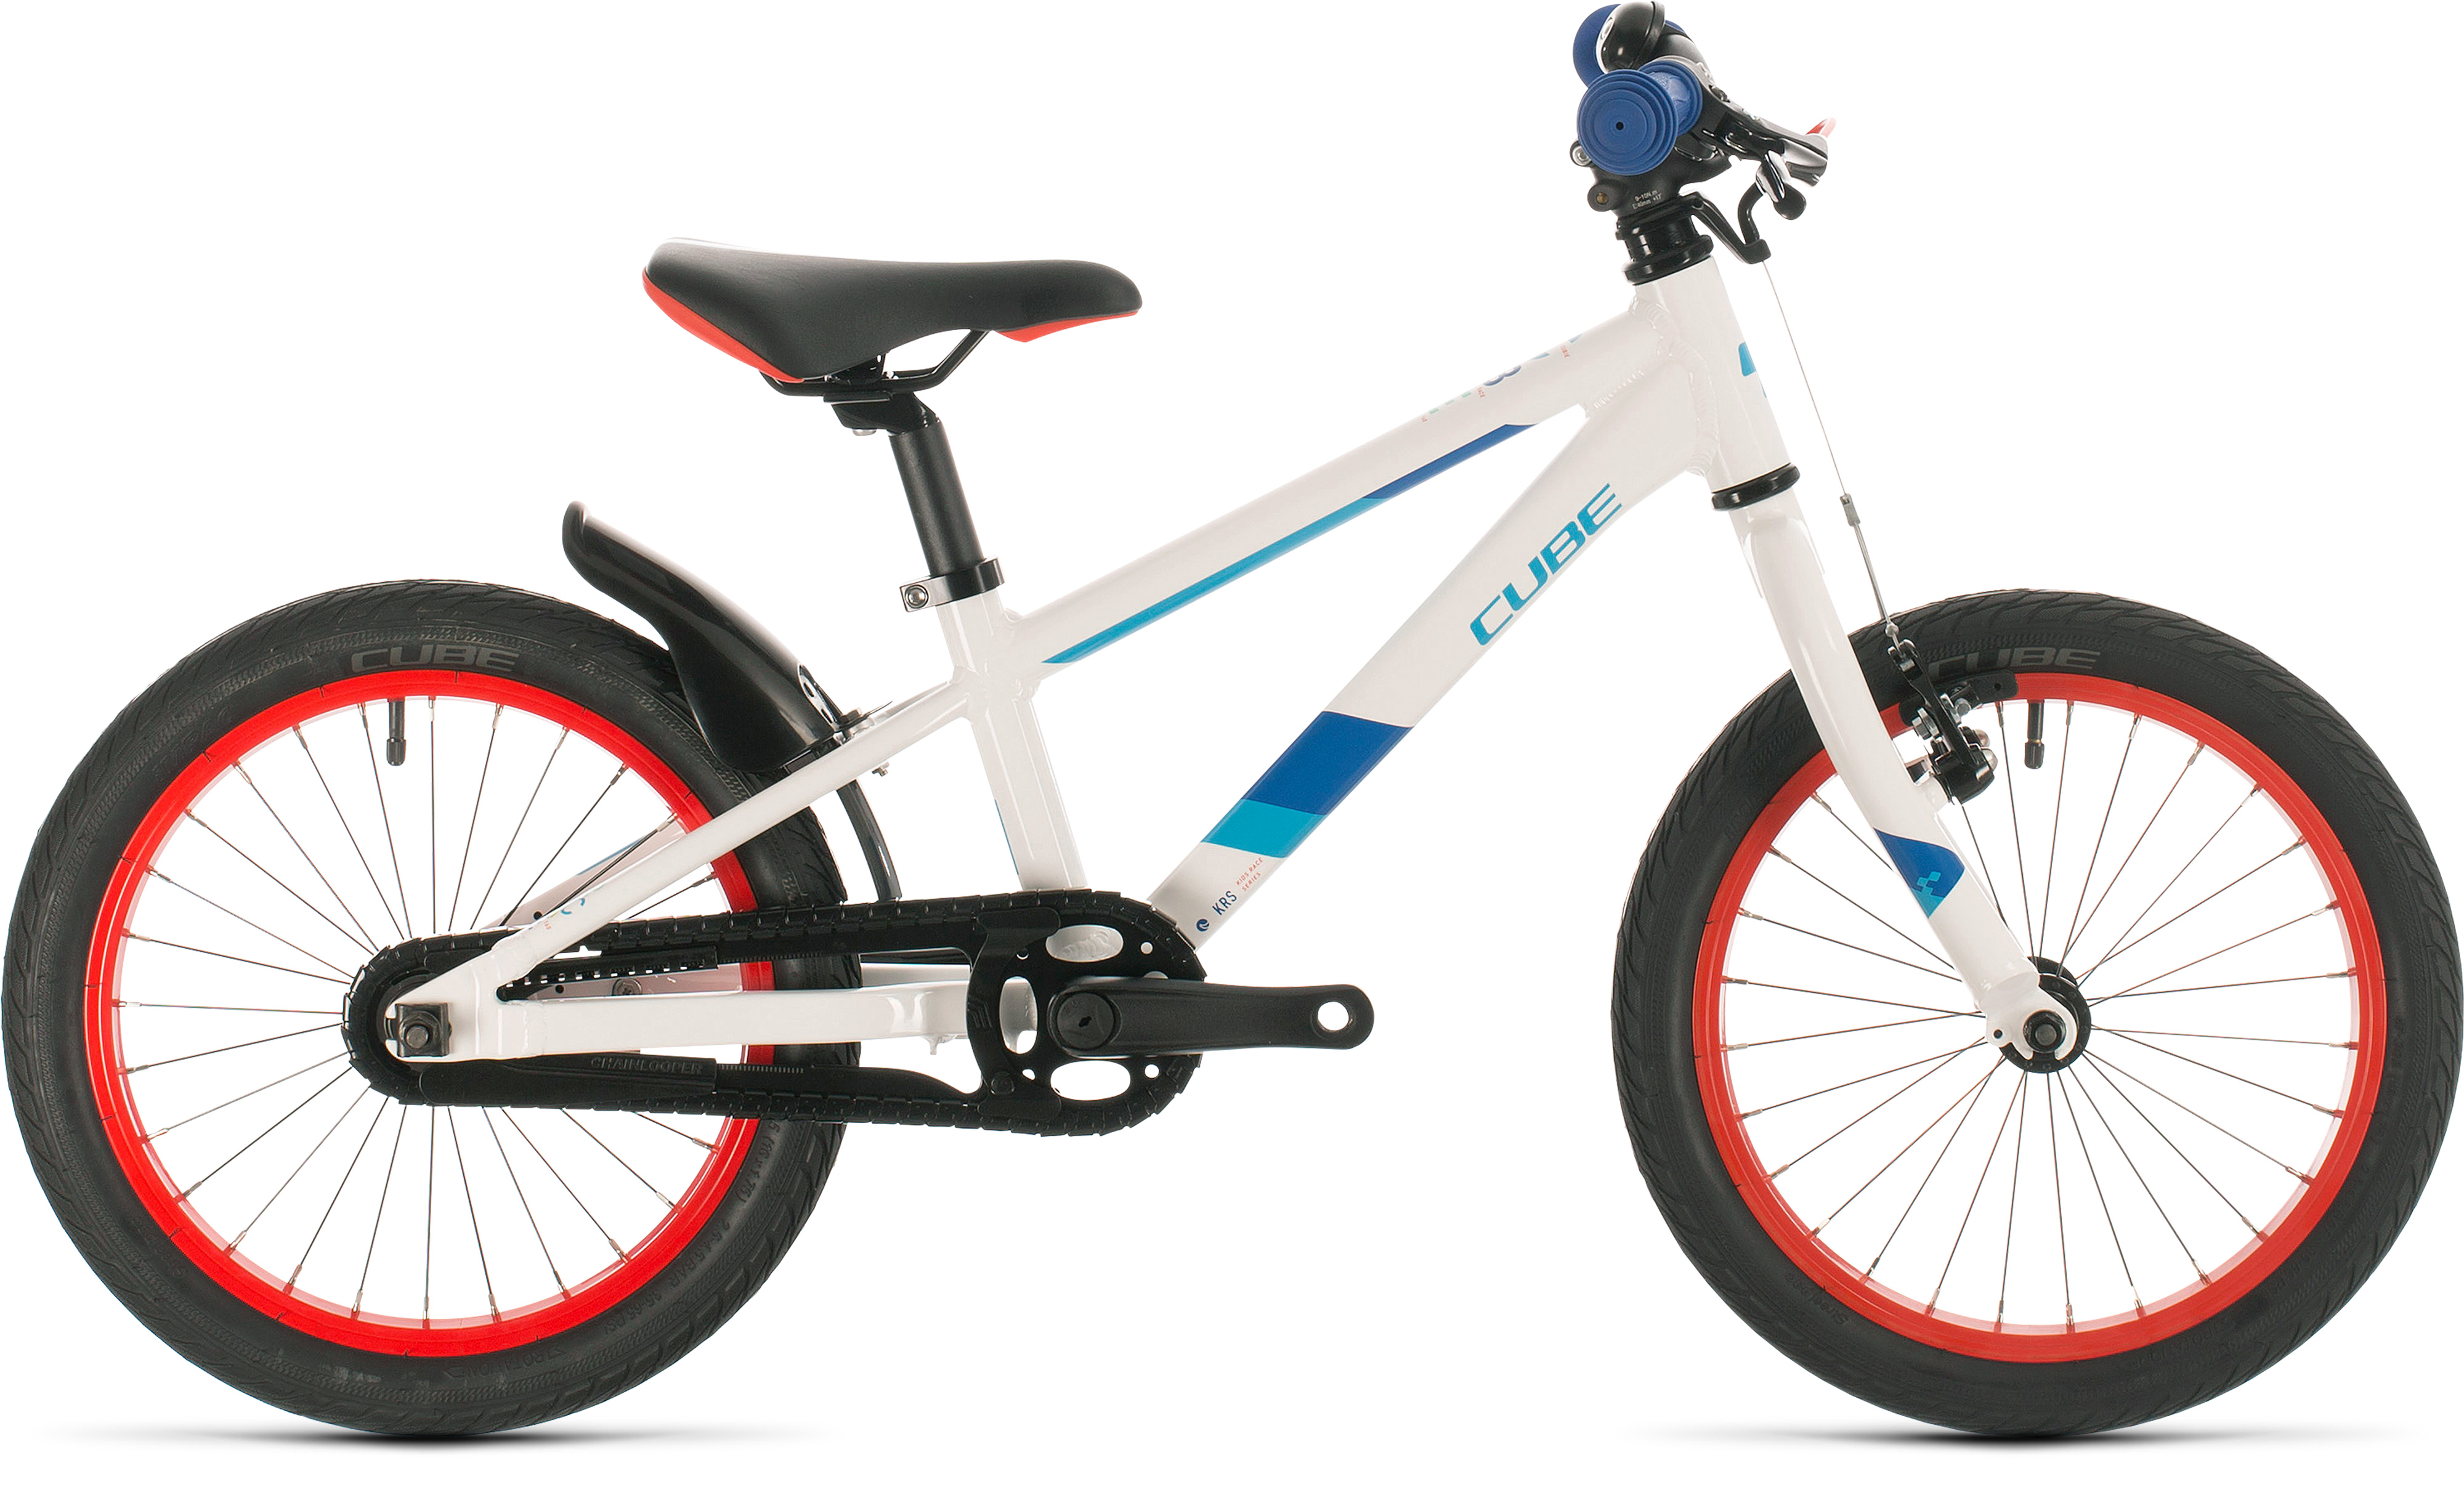  Отзывы о Детском велосипеде Cube Kid 160 2020